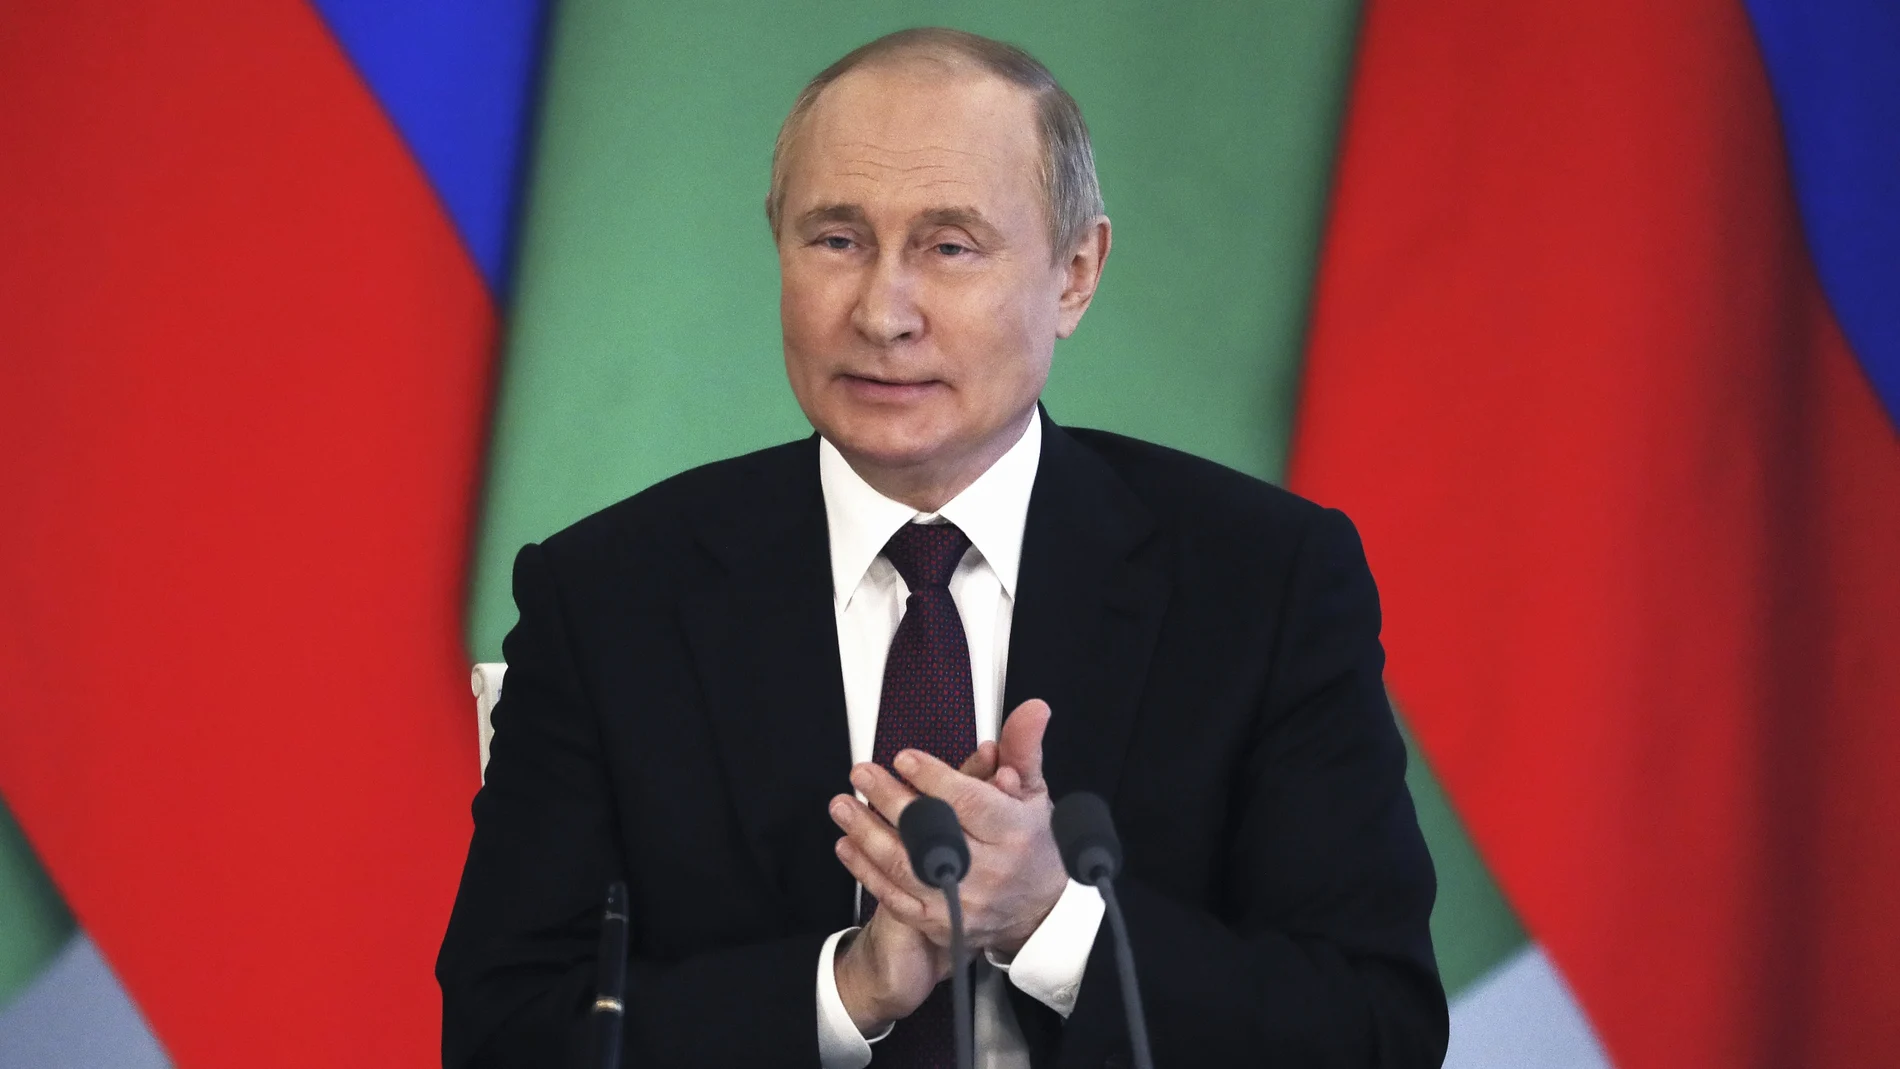 Vladimir Putin atiende a los medios de comunicación después de reunirse en Moscú con el presidente de Turkmenistán Serdar Berdimuhamedow